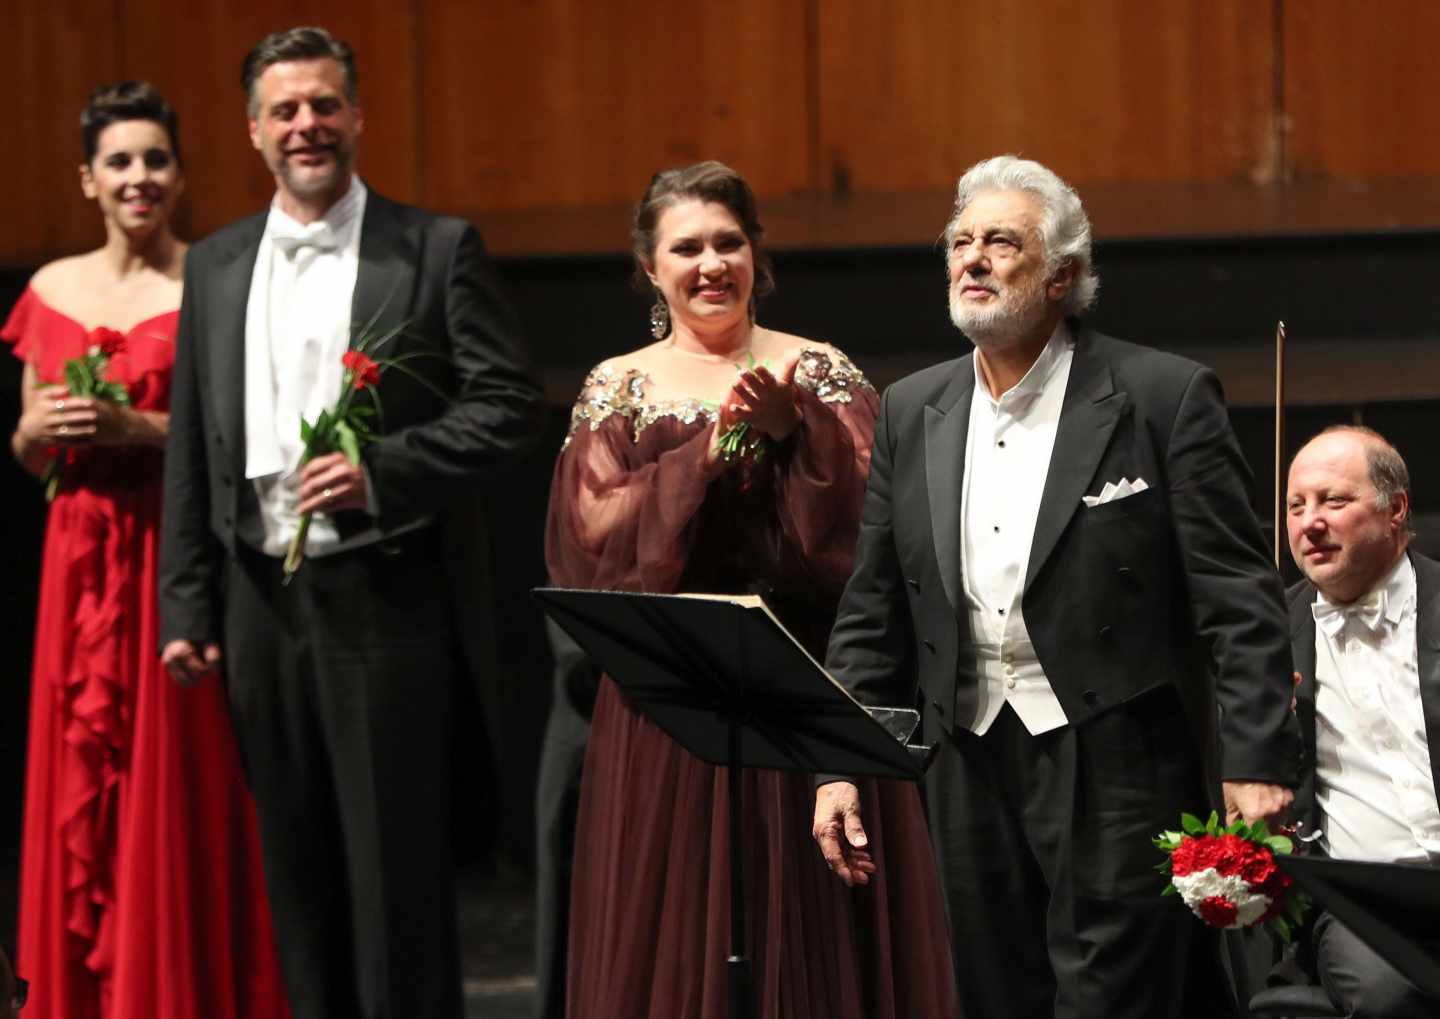 Plácido Domingo, aclamado tras su actuación en Salzburgo.